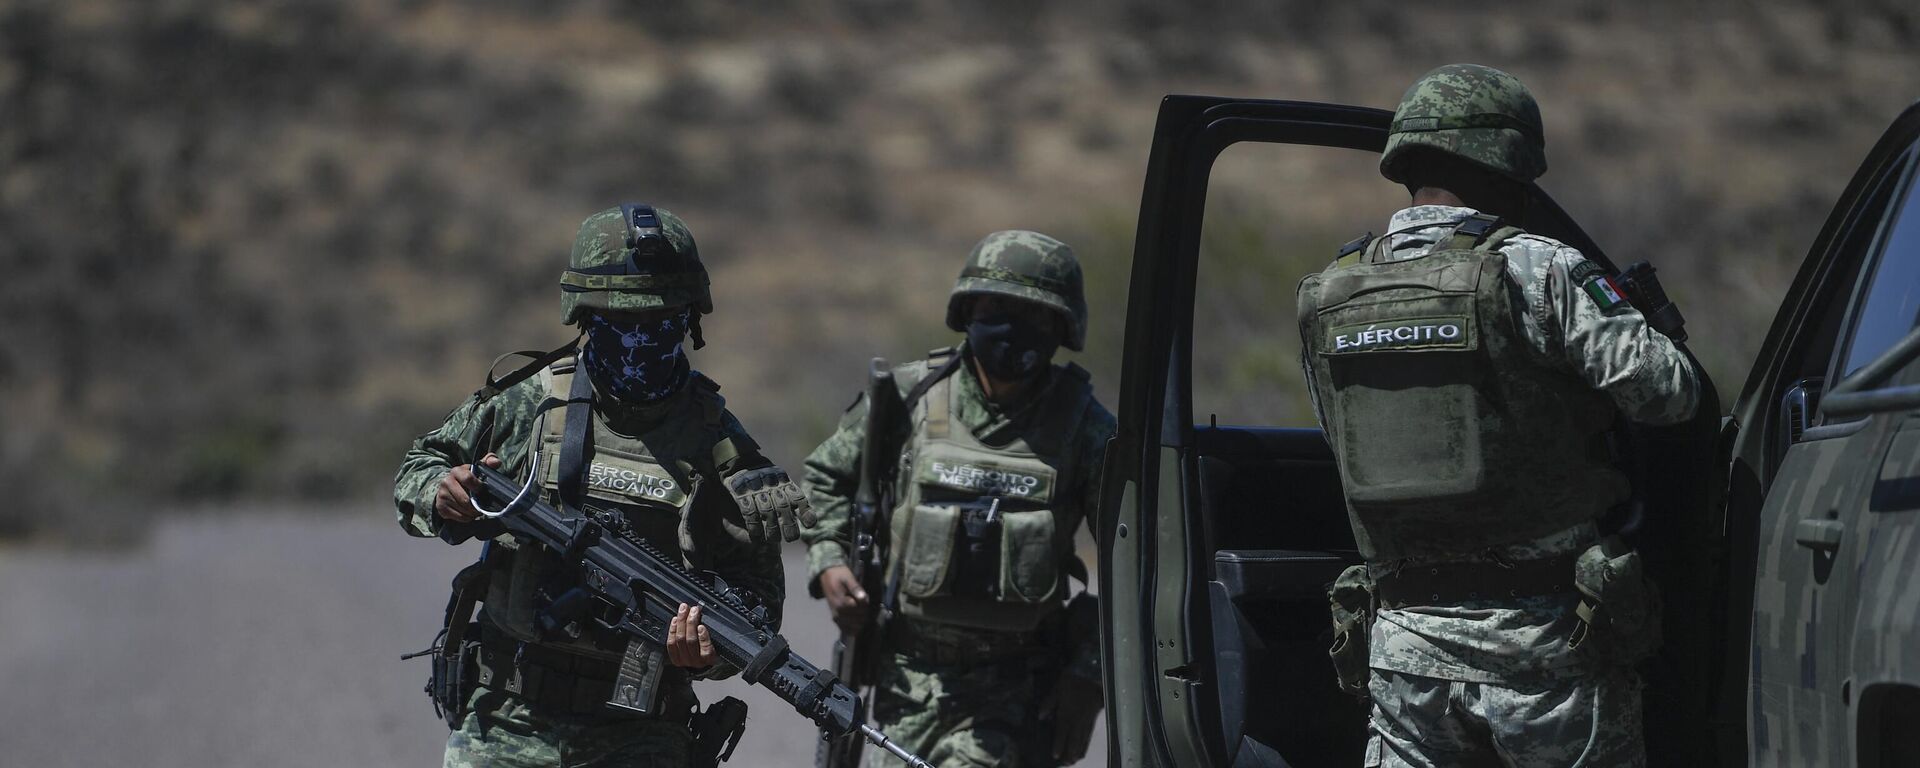 Soldados del ejército mexicano durante un operativo en el estado de Zacatecas, en el centro de México, en marzo de 2022 - Sputnik Mundo, 1920, 05.12.2022